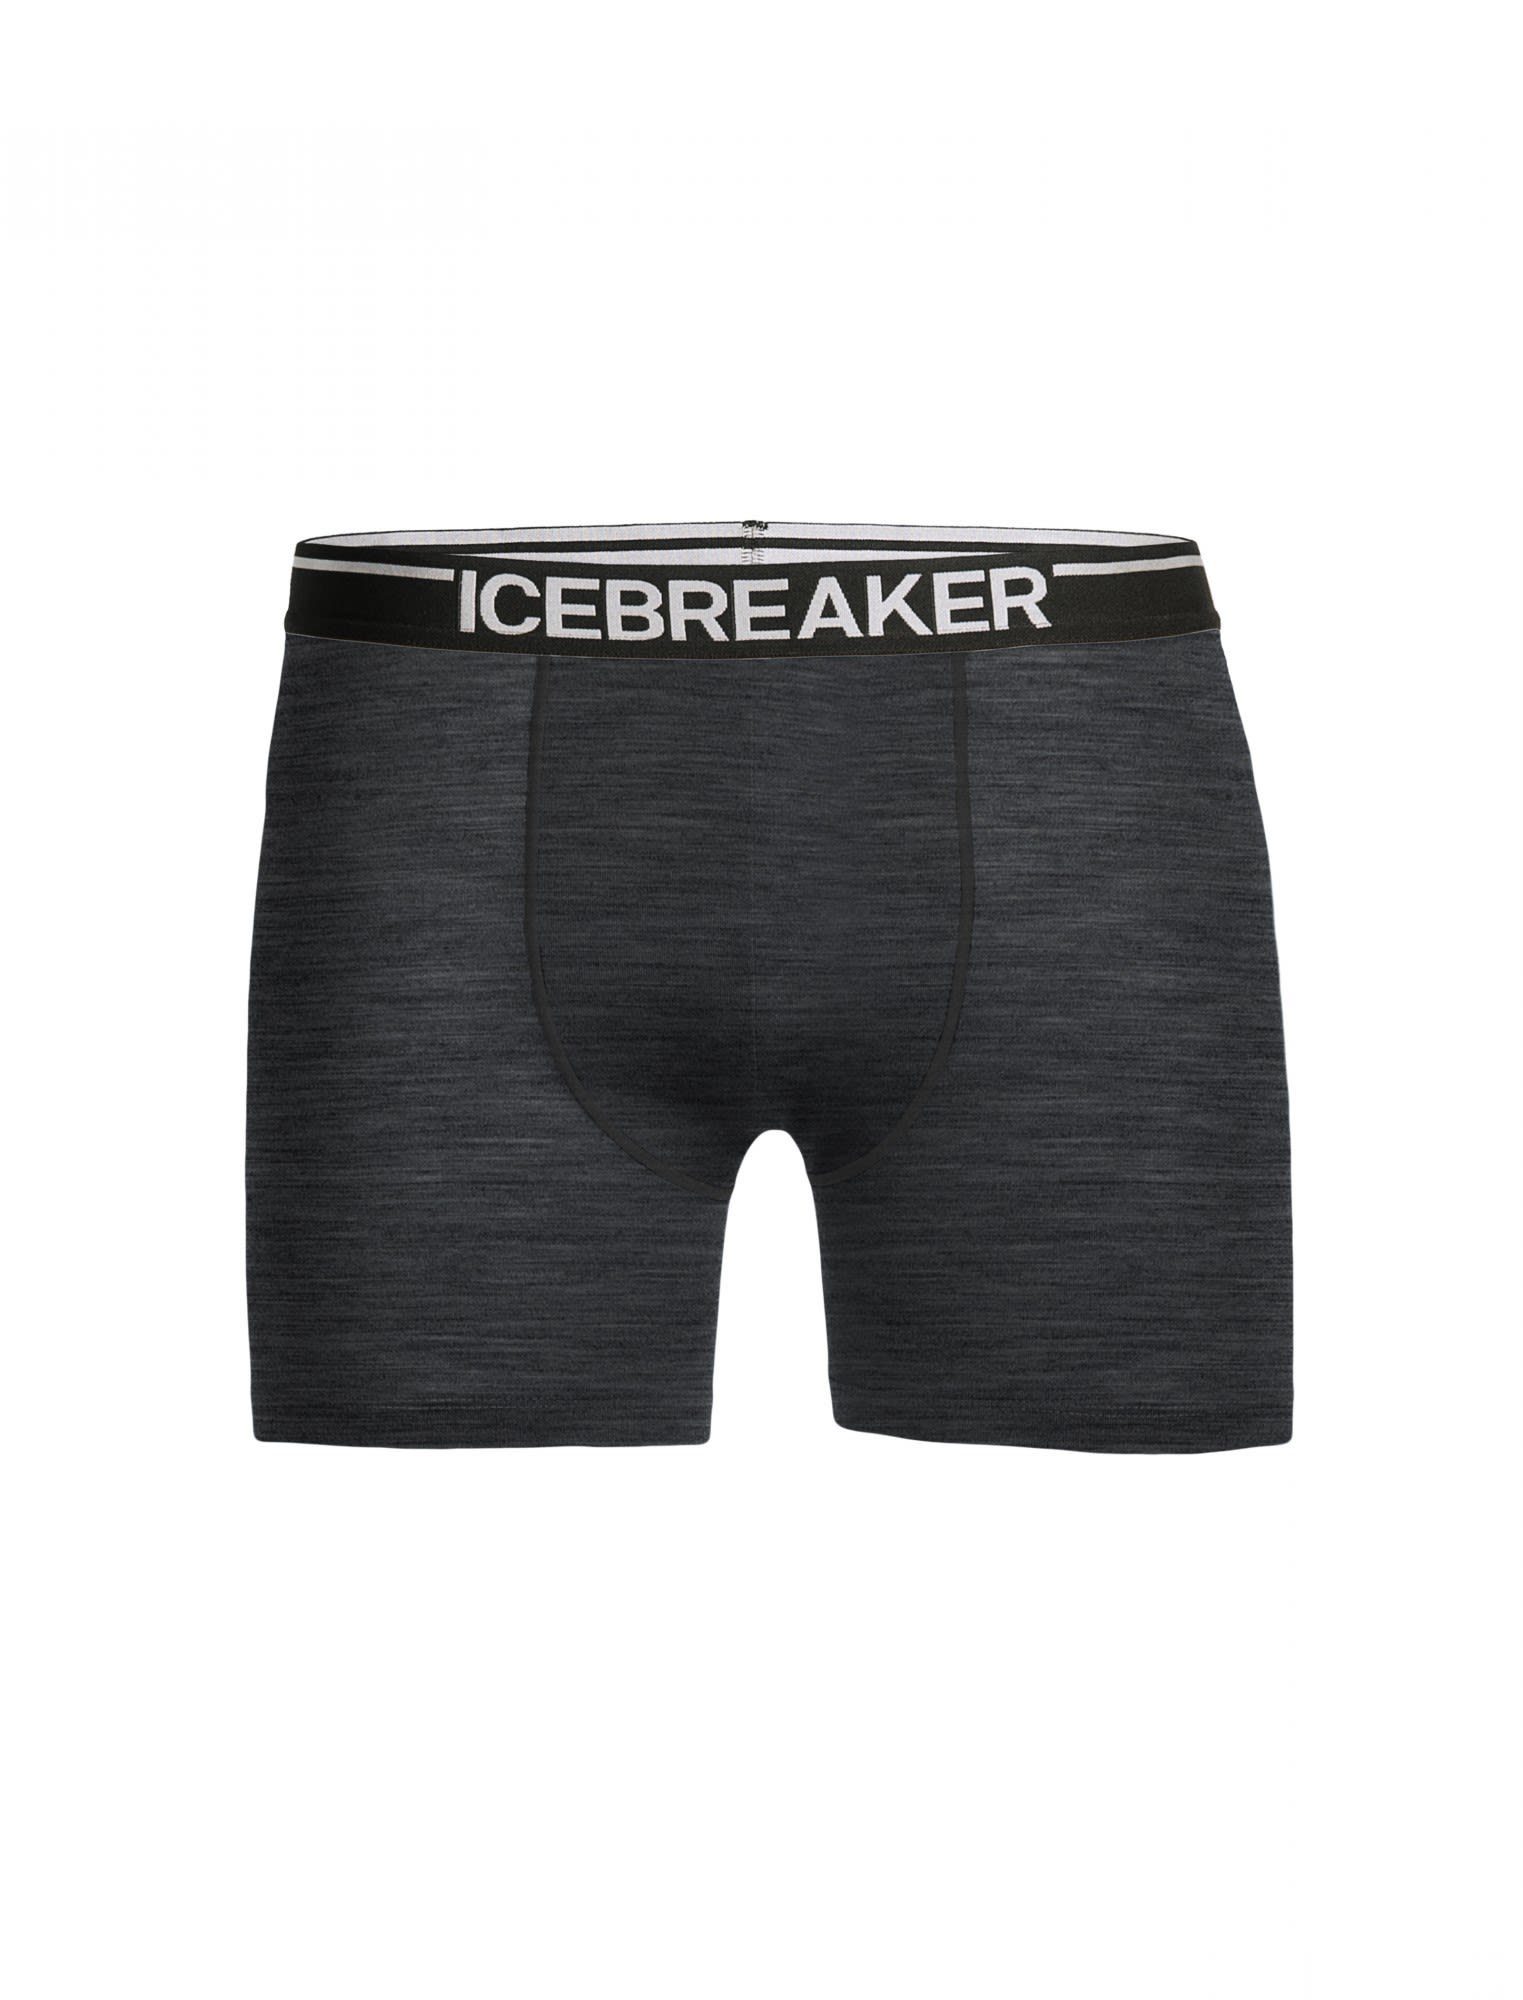 Lange HTHR Anatomica Lange Boxers Grey Unterhose Icebreaker Icebreaker M Herren